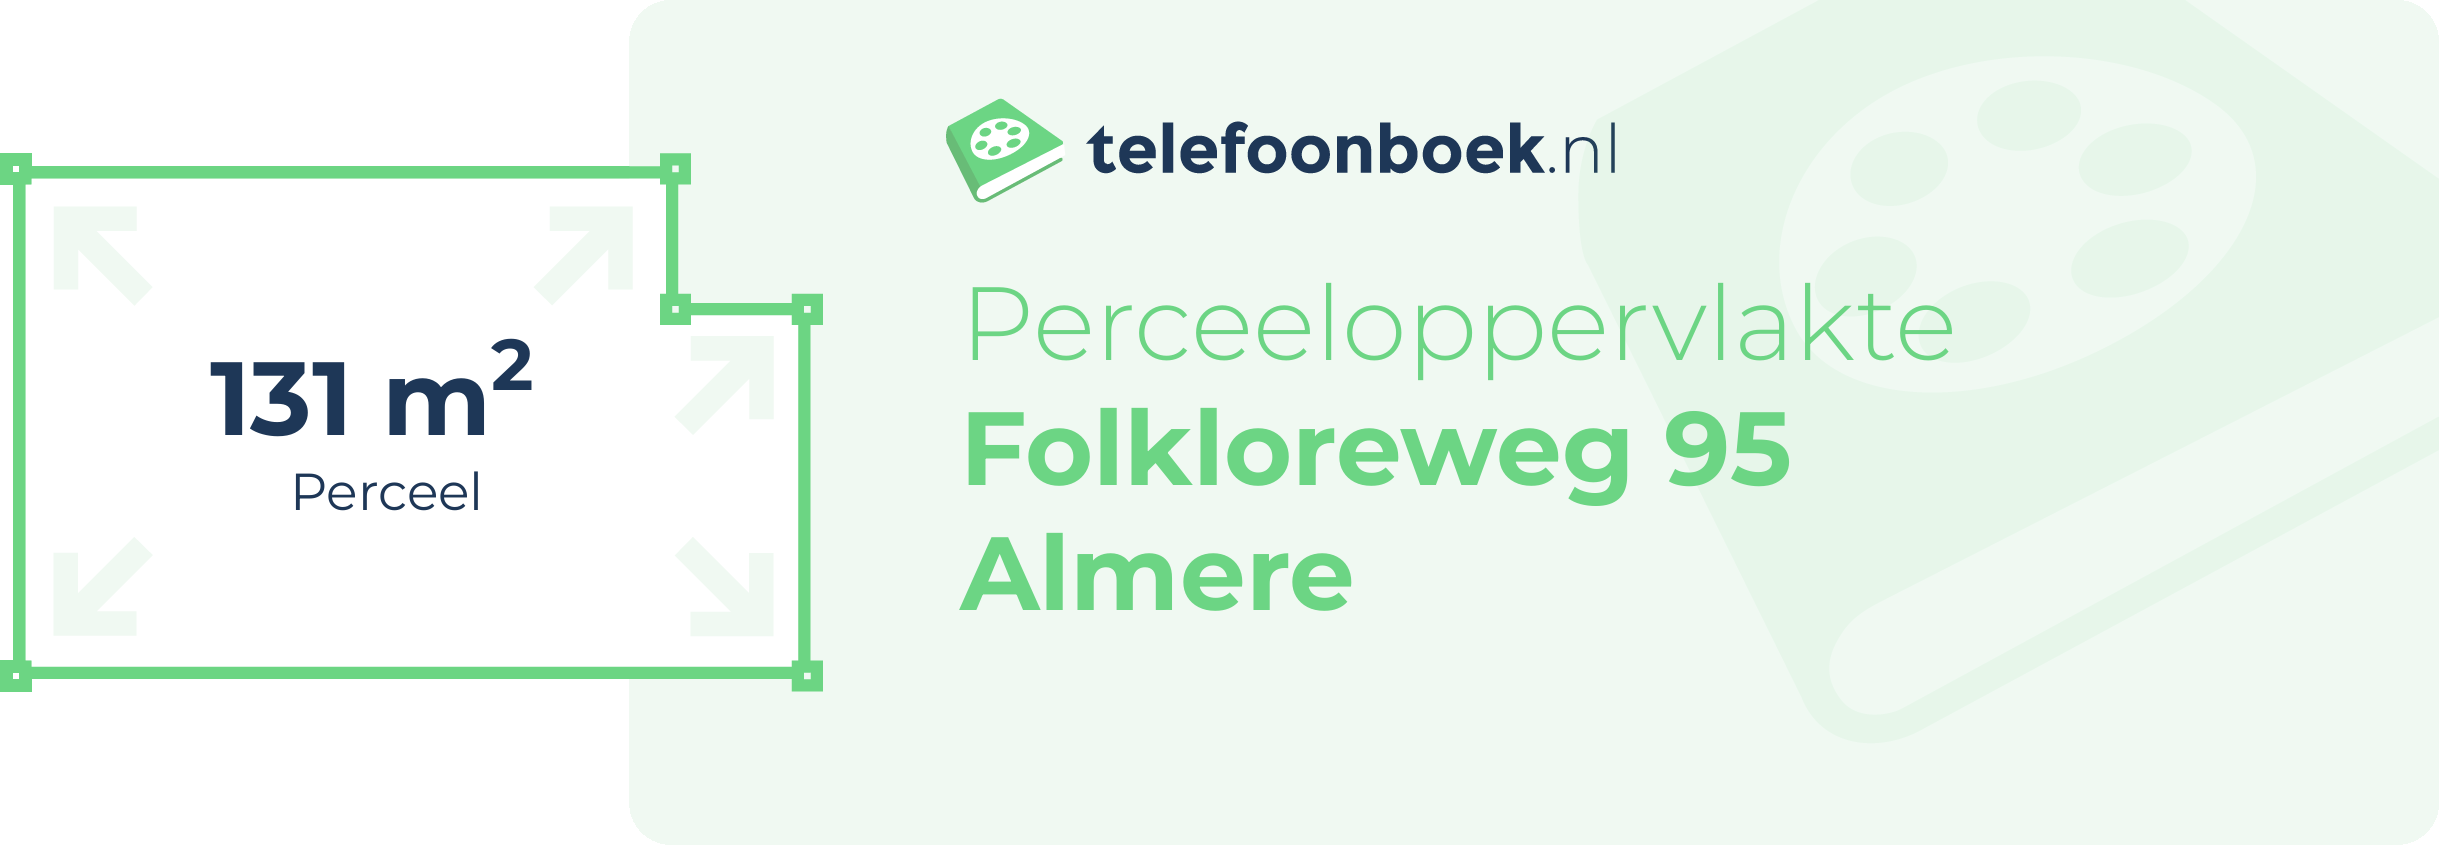 Perceeloppervlakte Folkloreweg 95 Almere